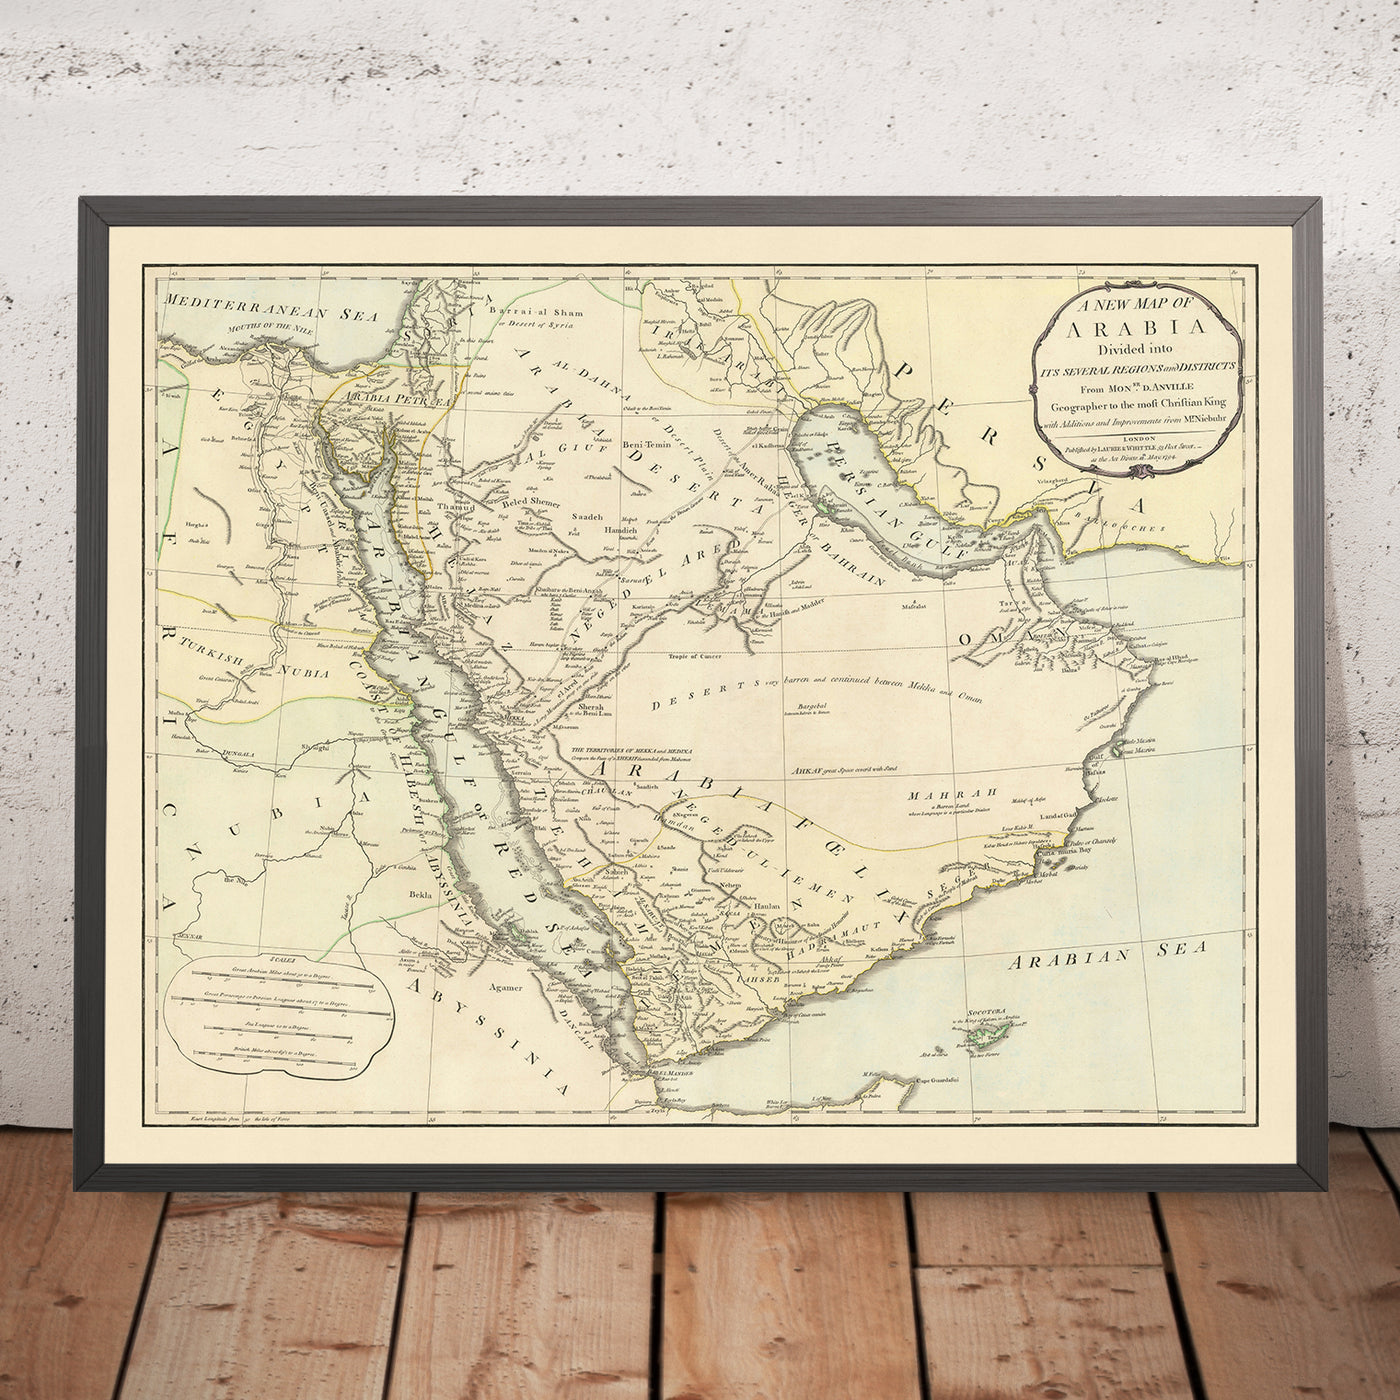 Mapa antiguo de Oriente Medio de Laurie & Whittle, 1794: desierto árido, rutas de caravanas a Damasco, islas de Bahrein, Samara y Pasteles, emirato de Ras Al Khaimah y la Mezquita Blanca.